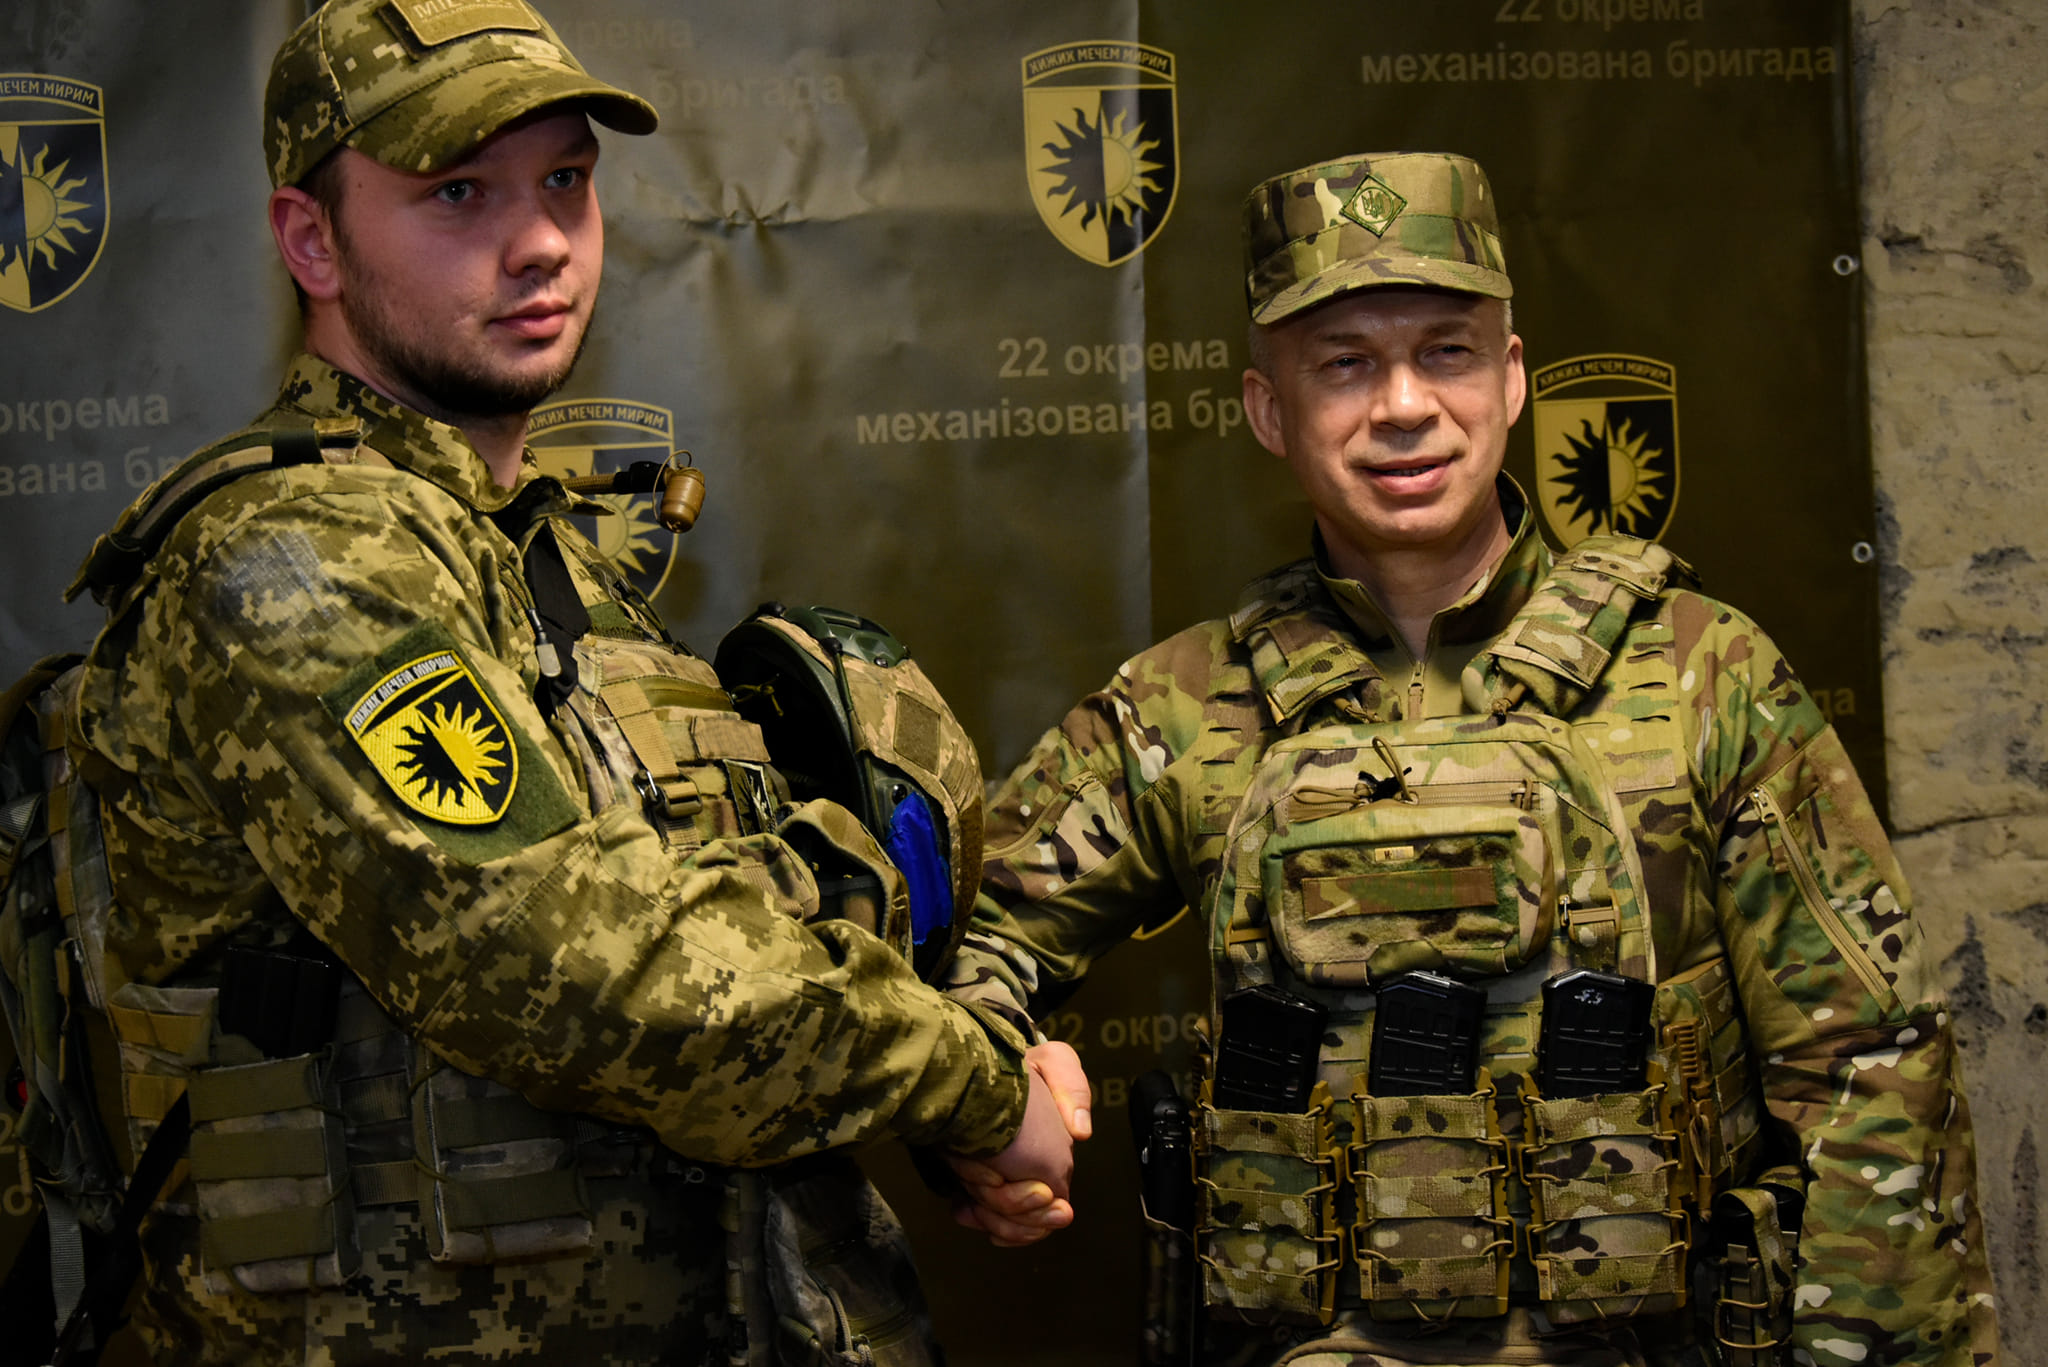 Воює з протезом: воїн з Долини Назар Захарко отримав медаль Міністерства оборони України (ФОТО)